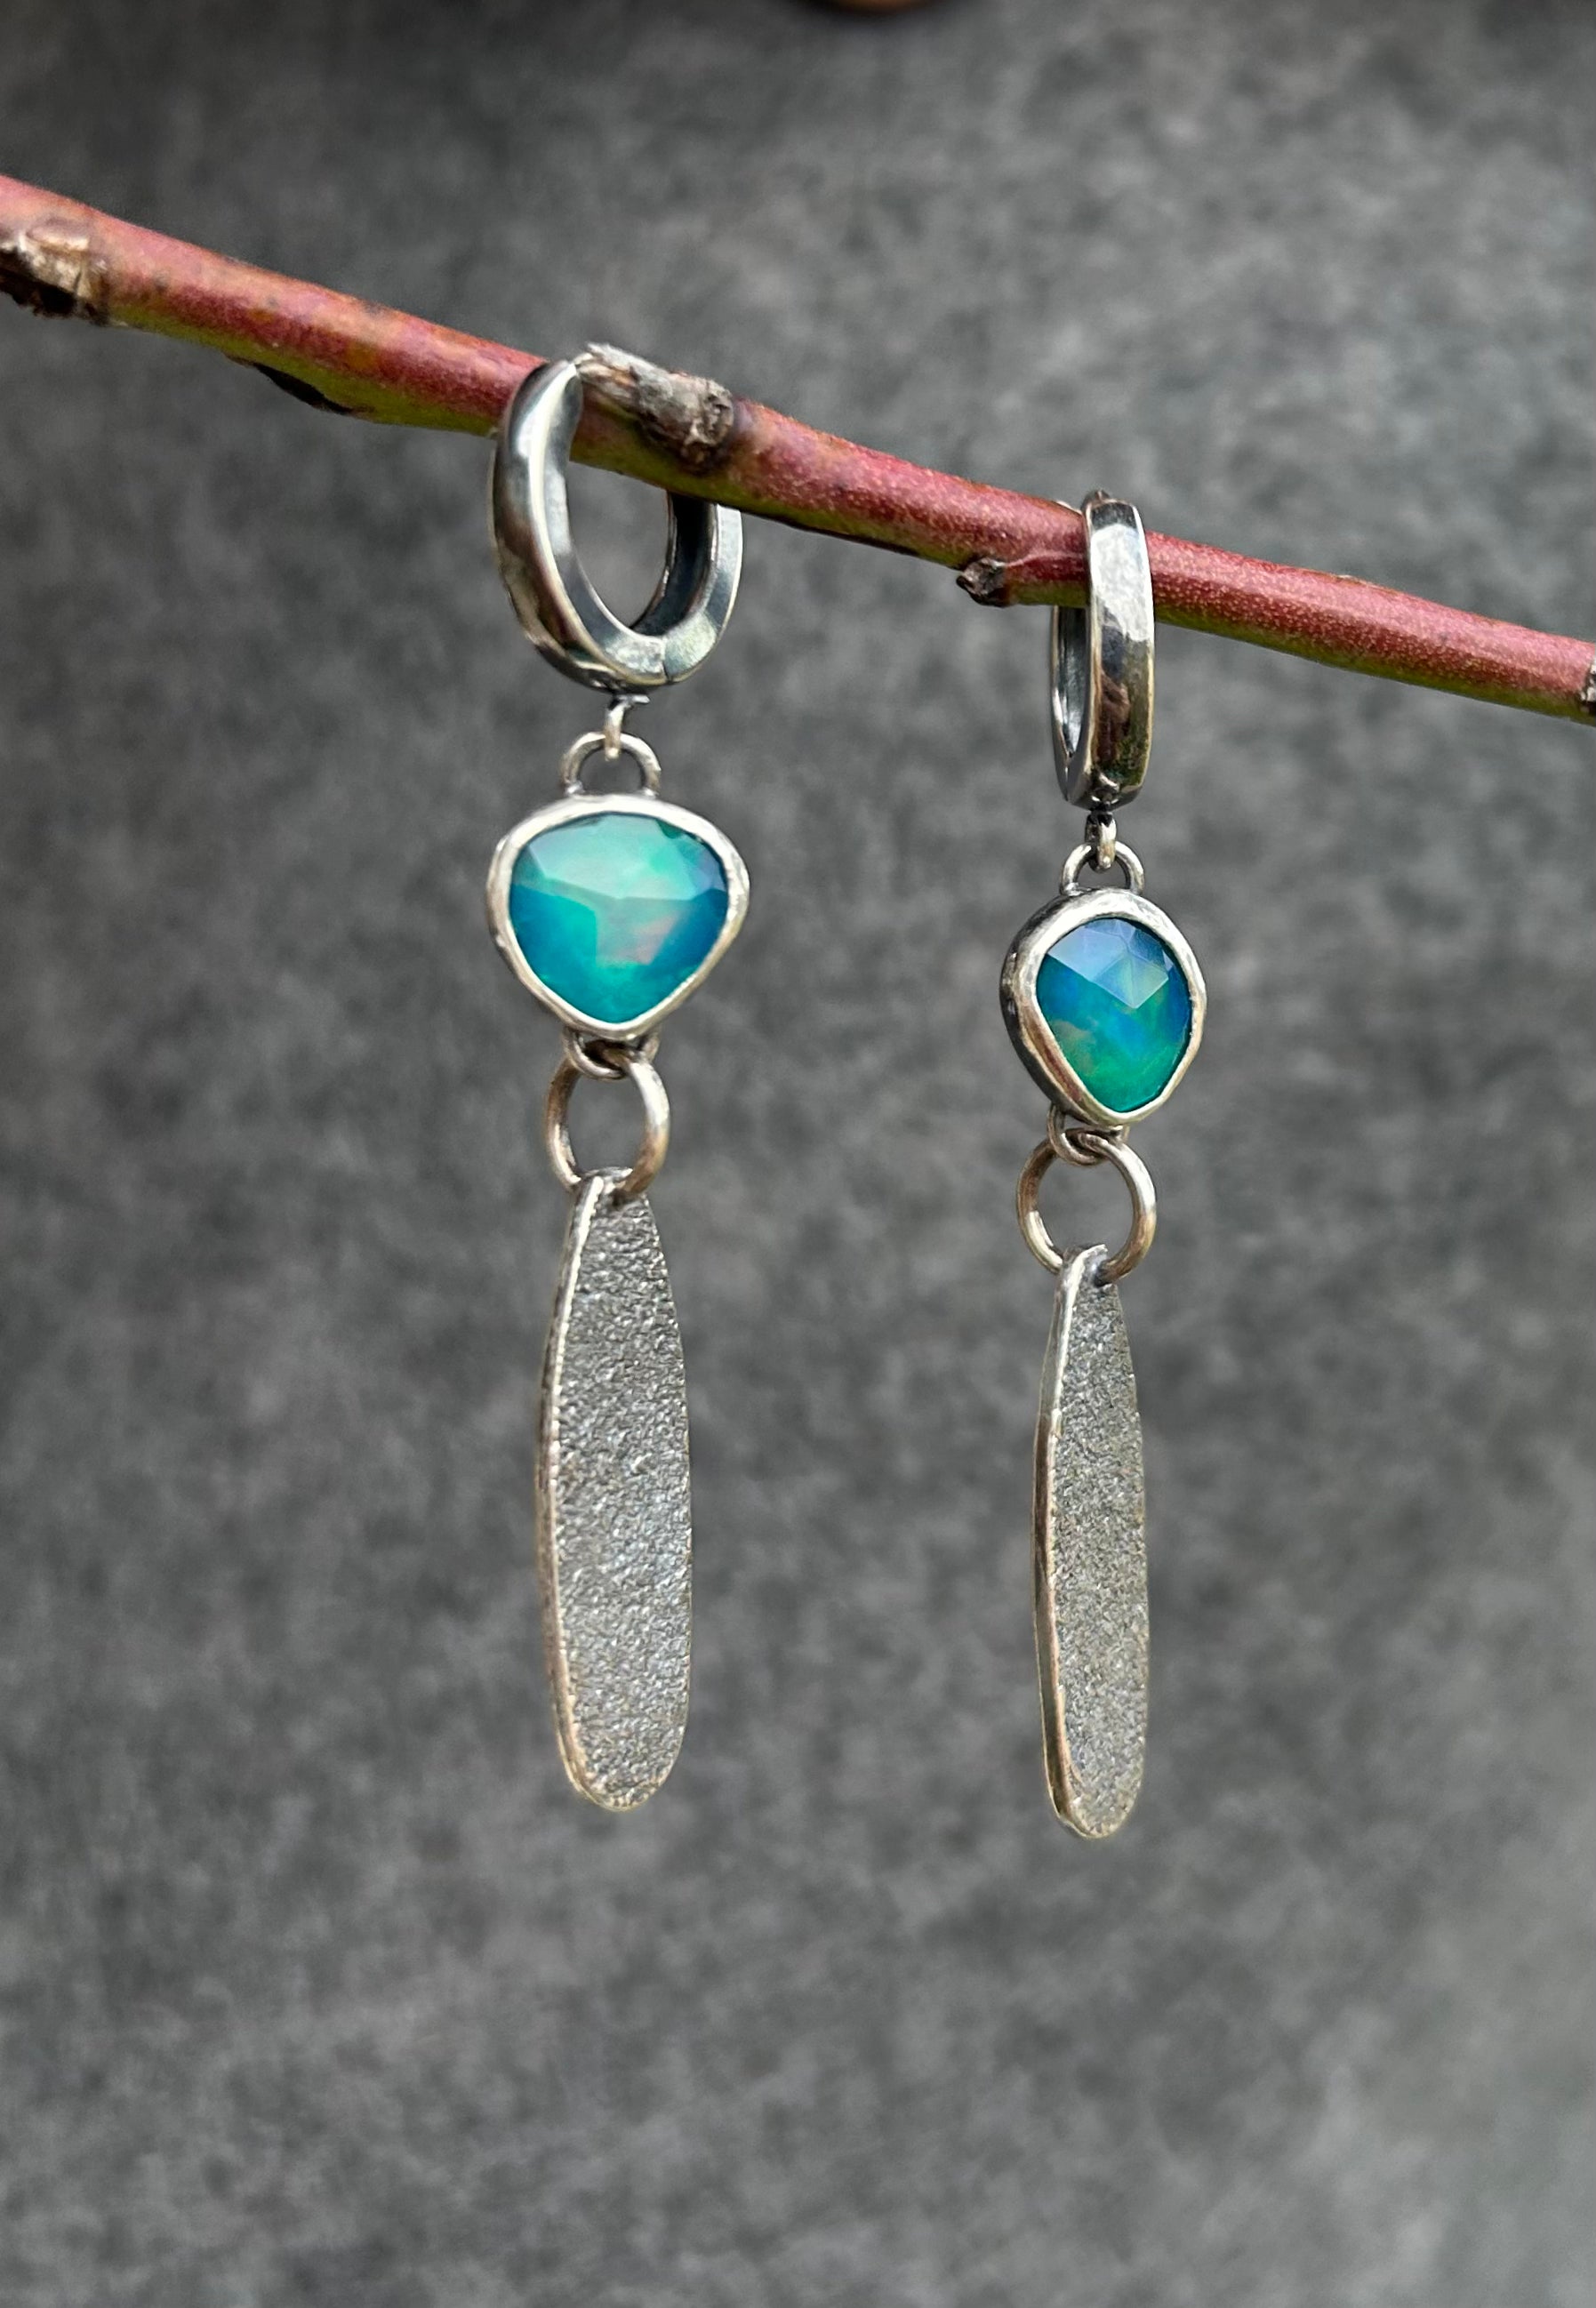 Stardust Earrings with Opal